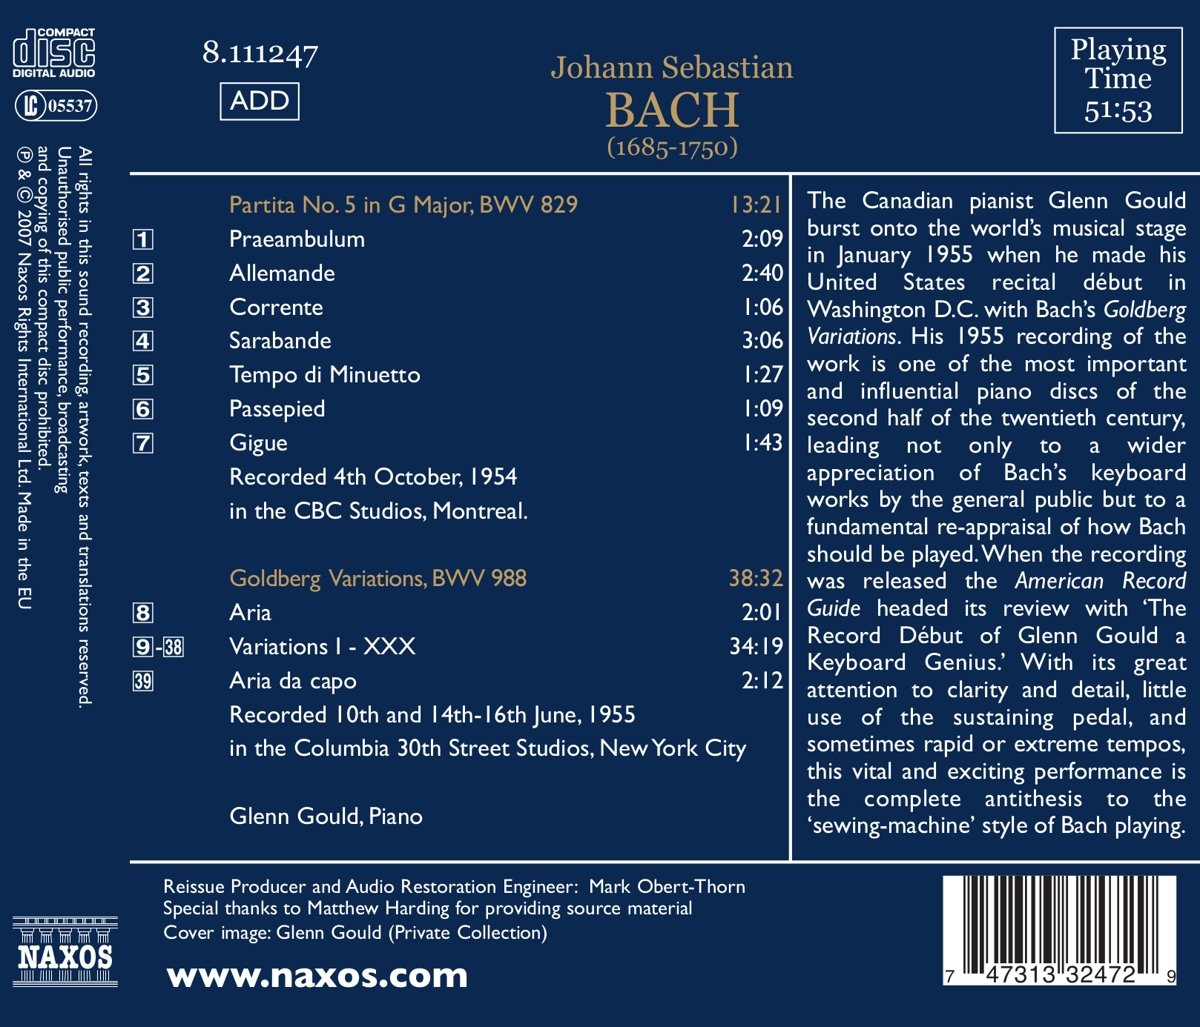 Glenn Gould 바흐: 골드베르크 변주곡, 파르티타 5번 [1954, 55년 녹음] - 글렌 굴드 (J.S.Bach: Goldberg Variations BWV988, Partita No.5 BWV829) 